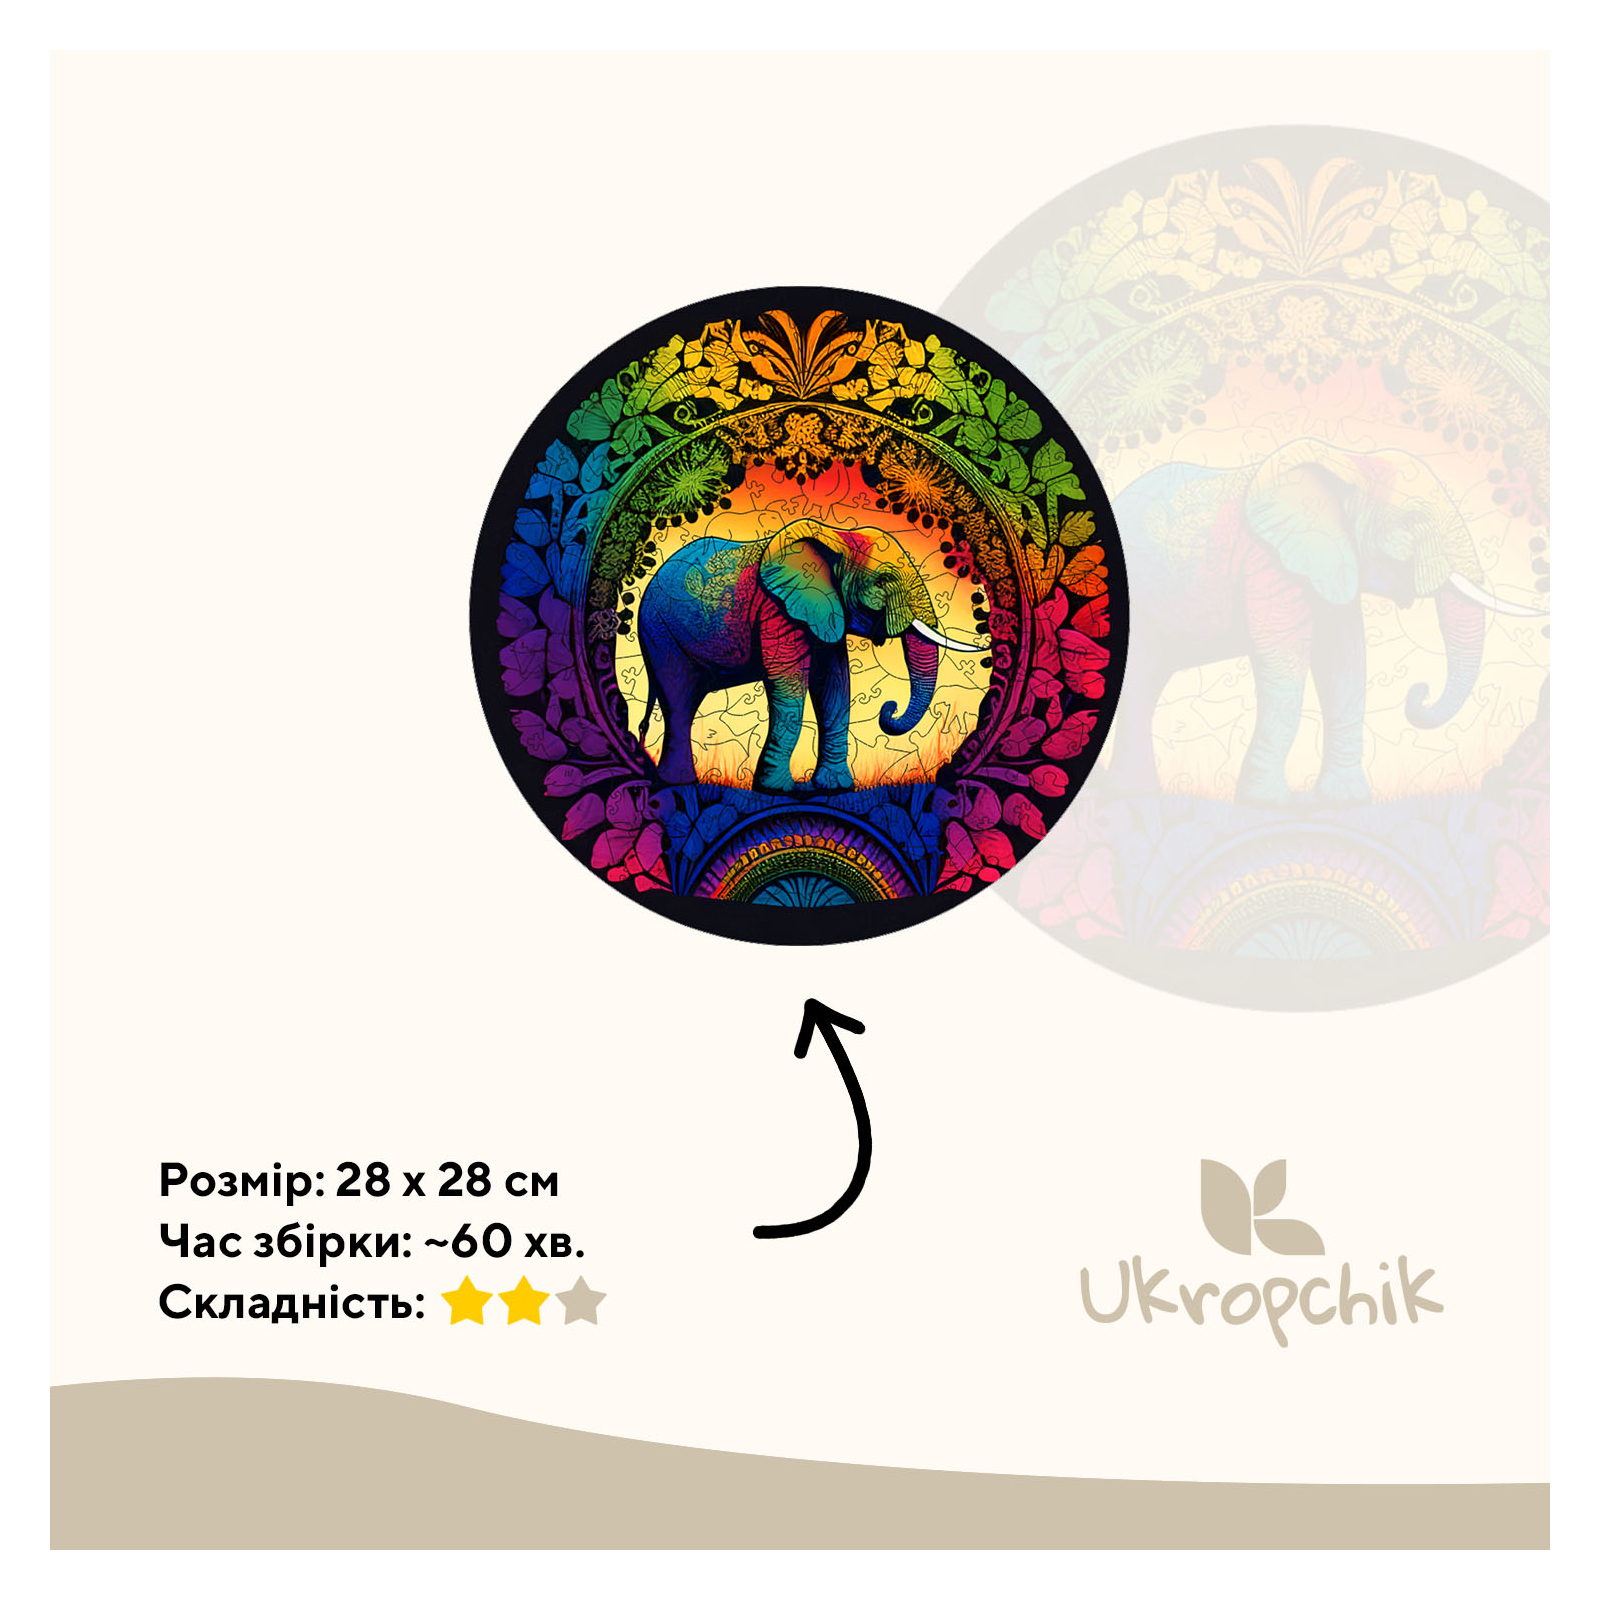 Пазл Ukropchik деревянный Слон Мандала size - L в коробке с набором-рамкой (Elephant Mandala A3) изображение 2